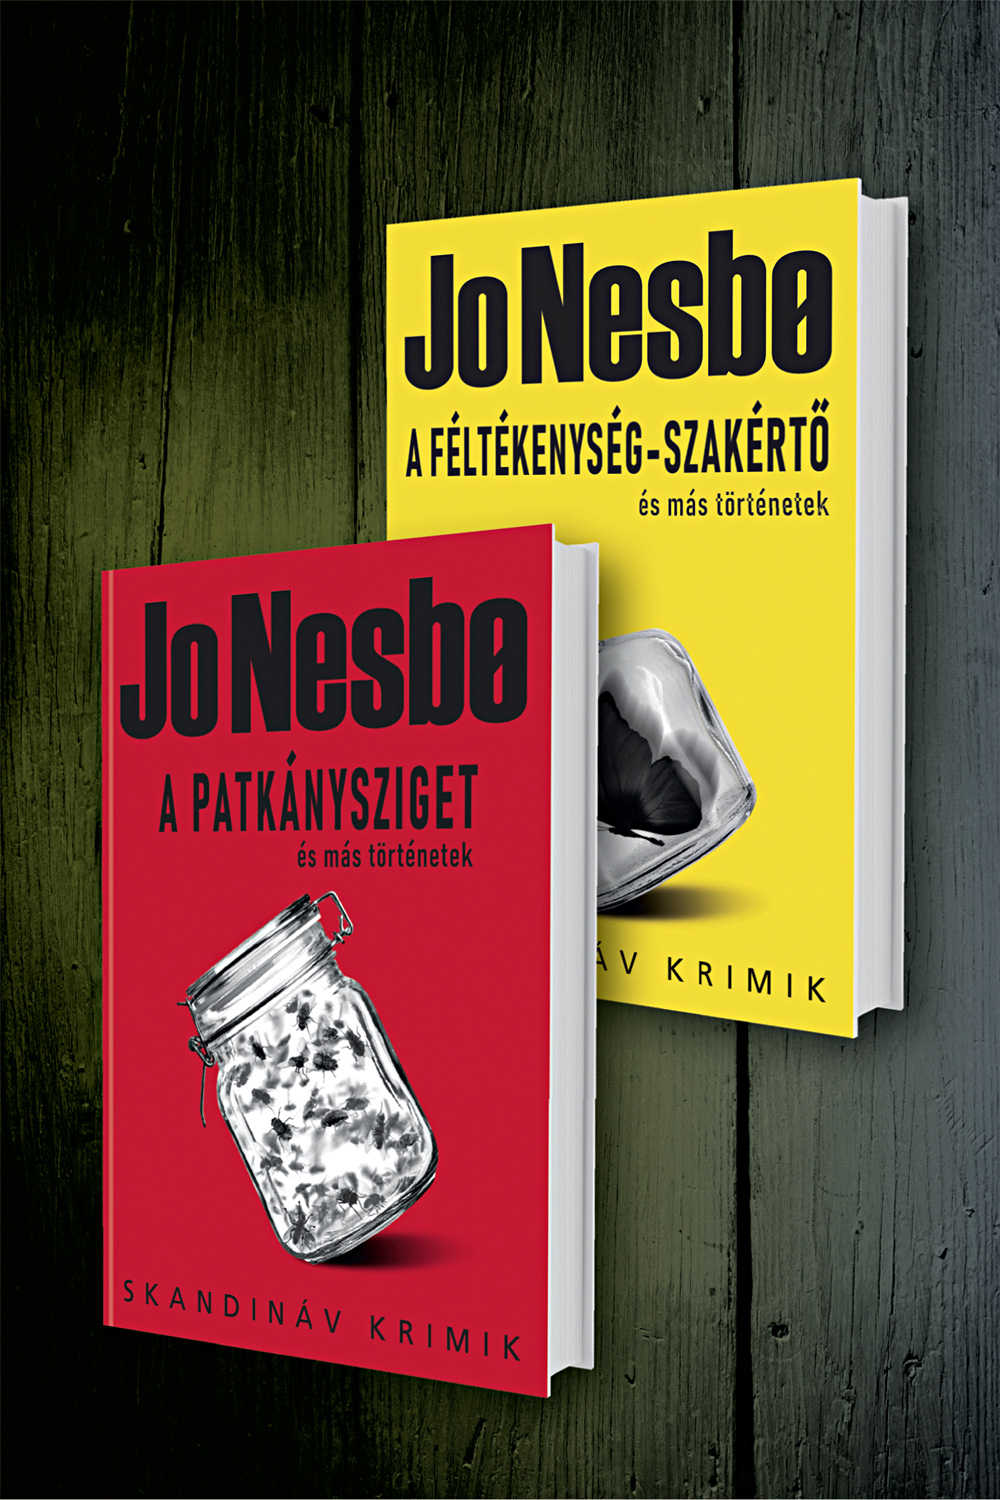 Jo Nesbø novelláskötetek könyvcsomag